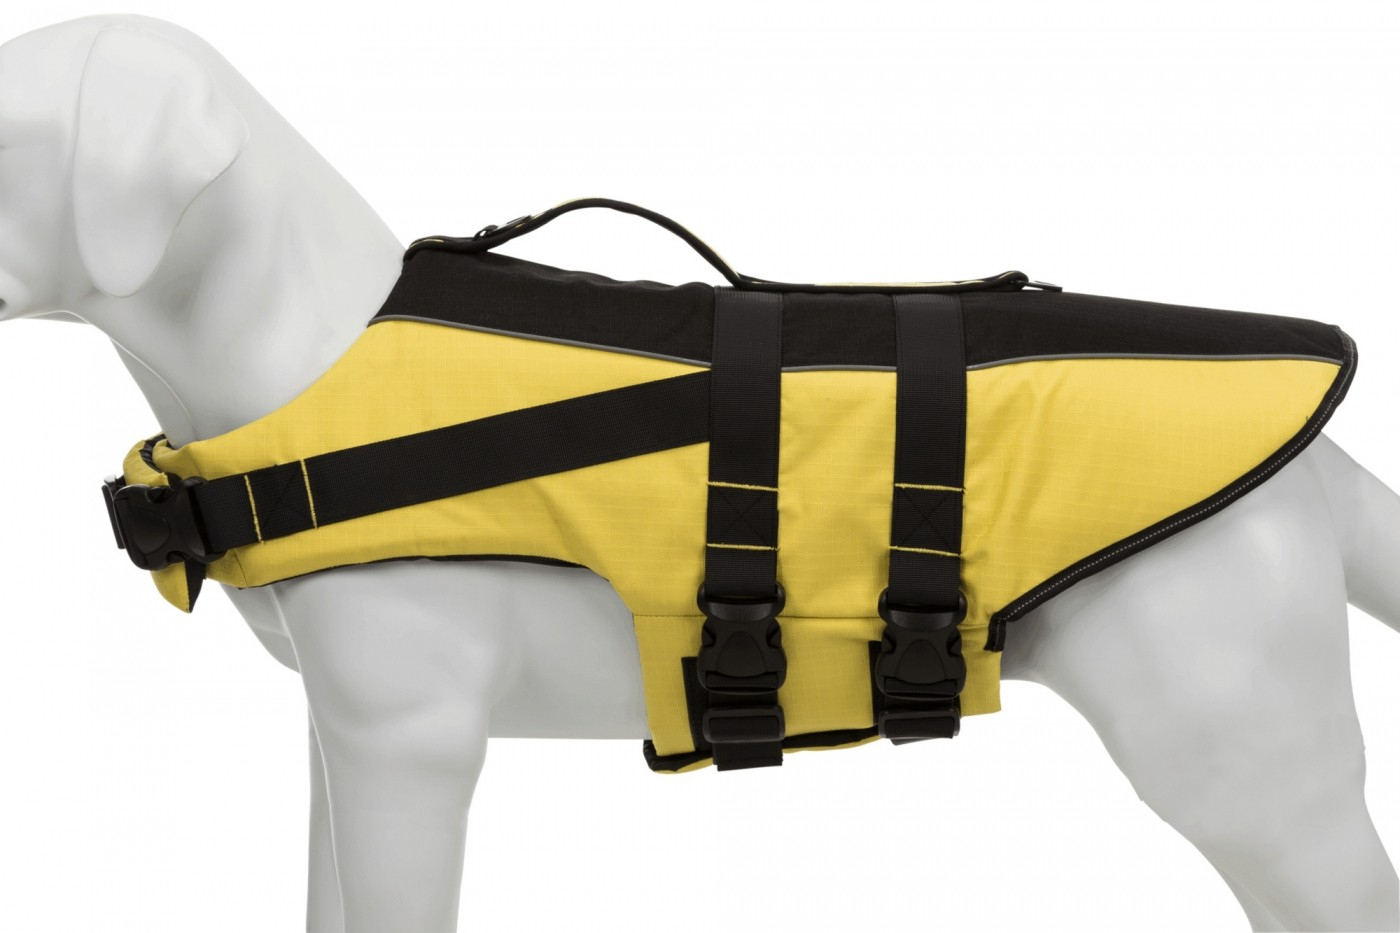 Chaleco salvavidas o de flotación para perros Amarillo/Negro varias tallas disponibles